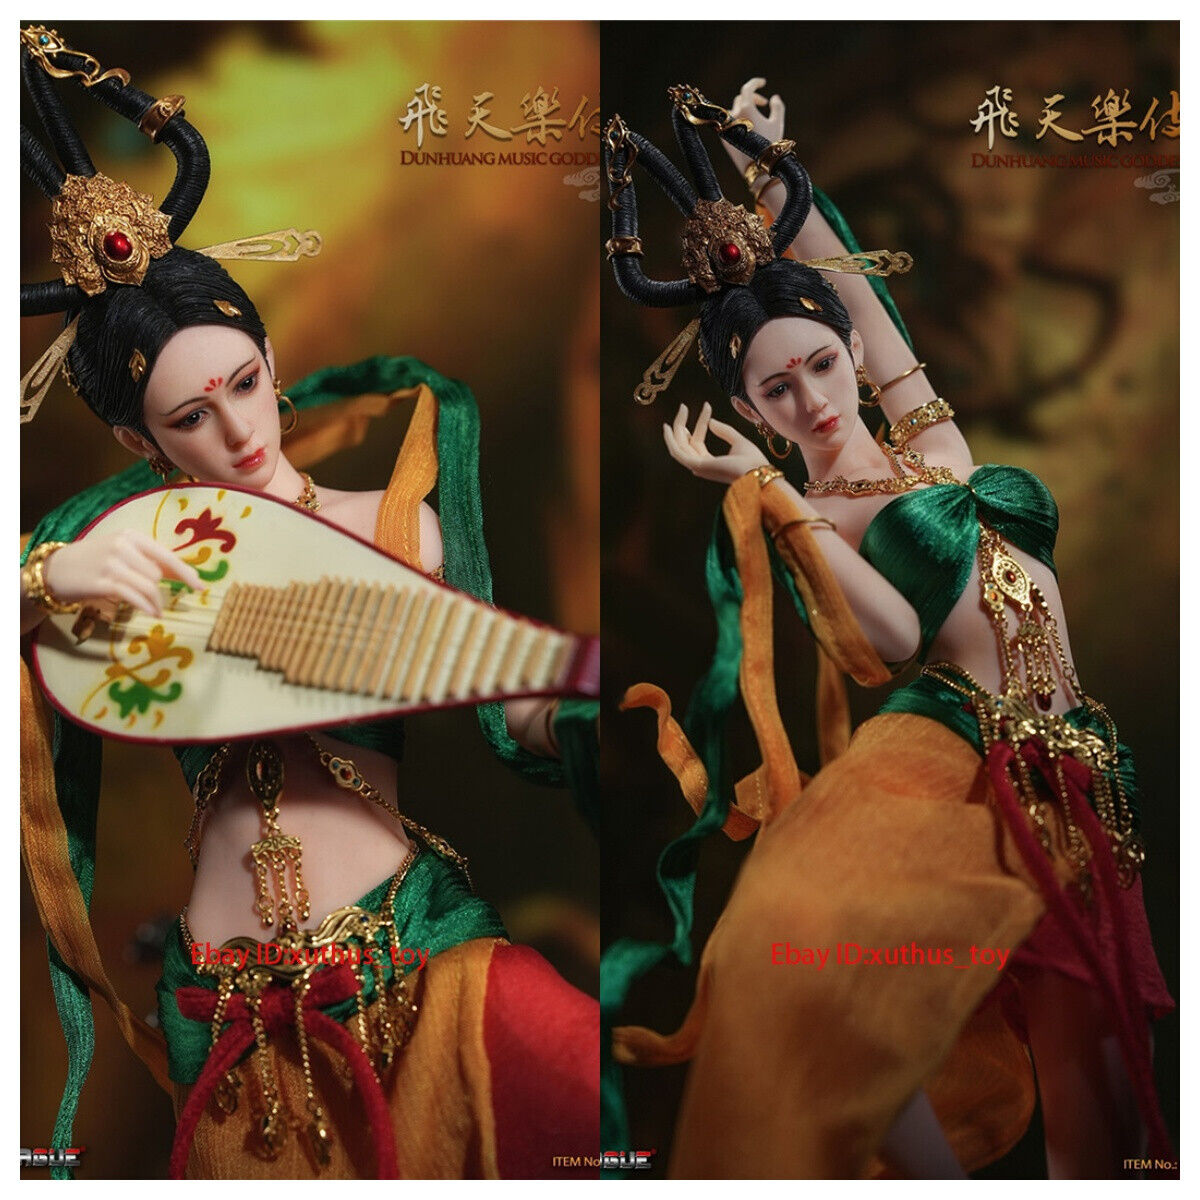 InStock TBLeague 1/6 Feitian Leji Dunhuang Music Goddess PL2023-205A Moving Doll